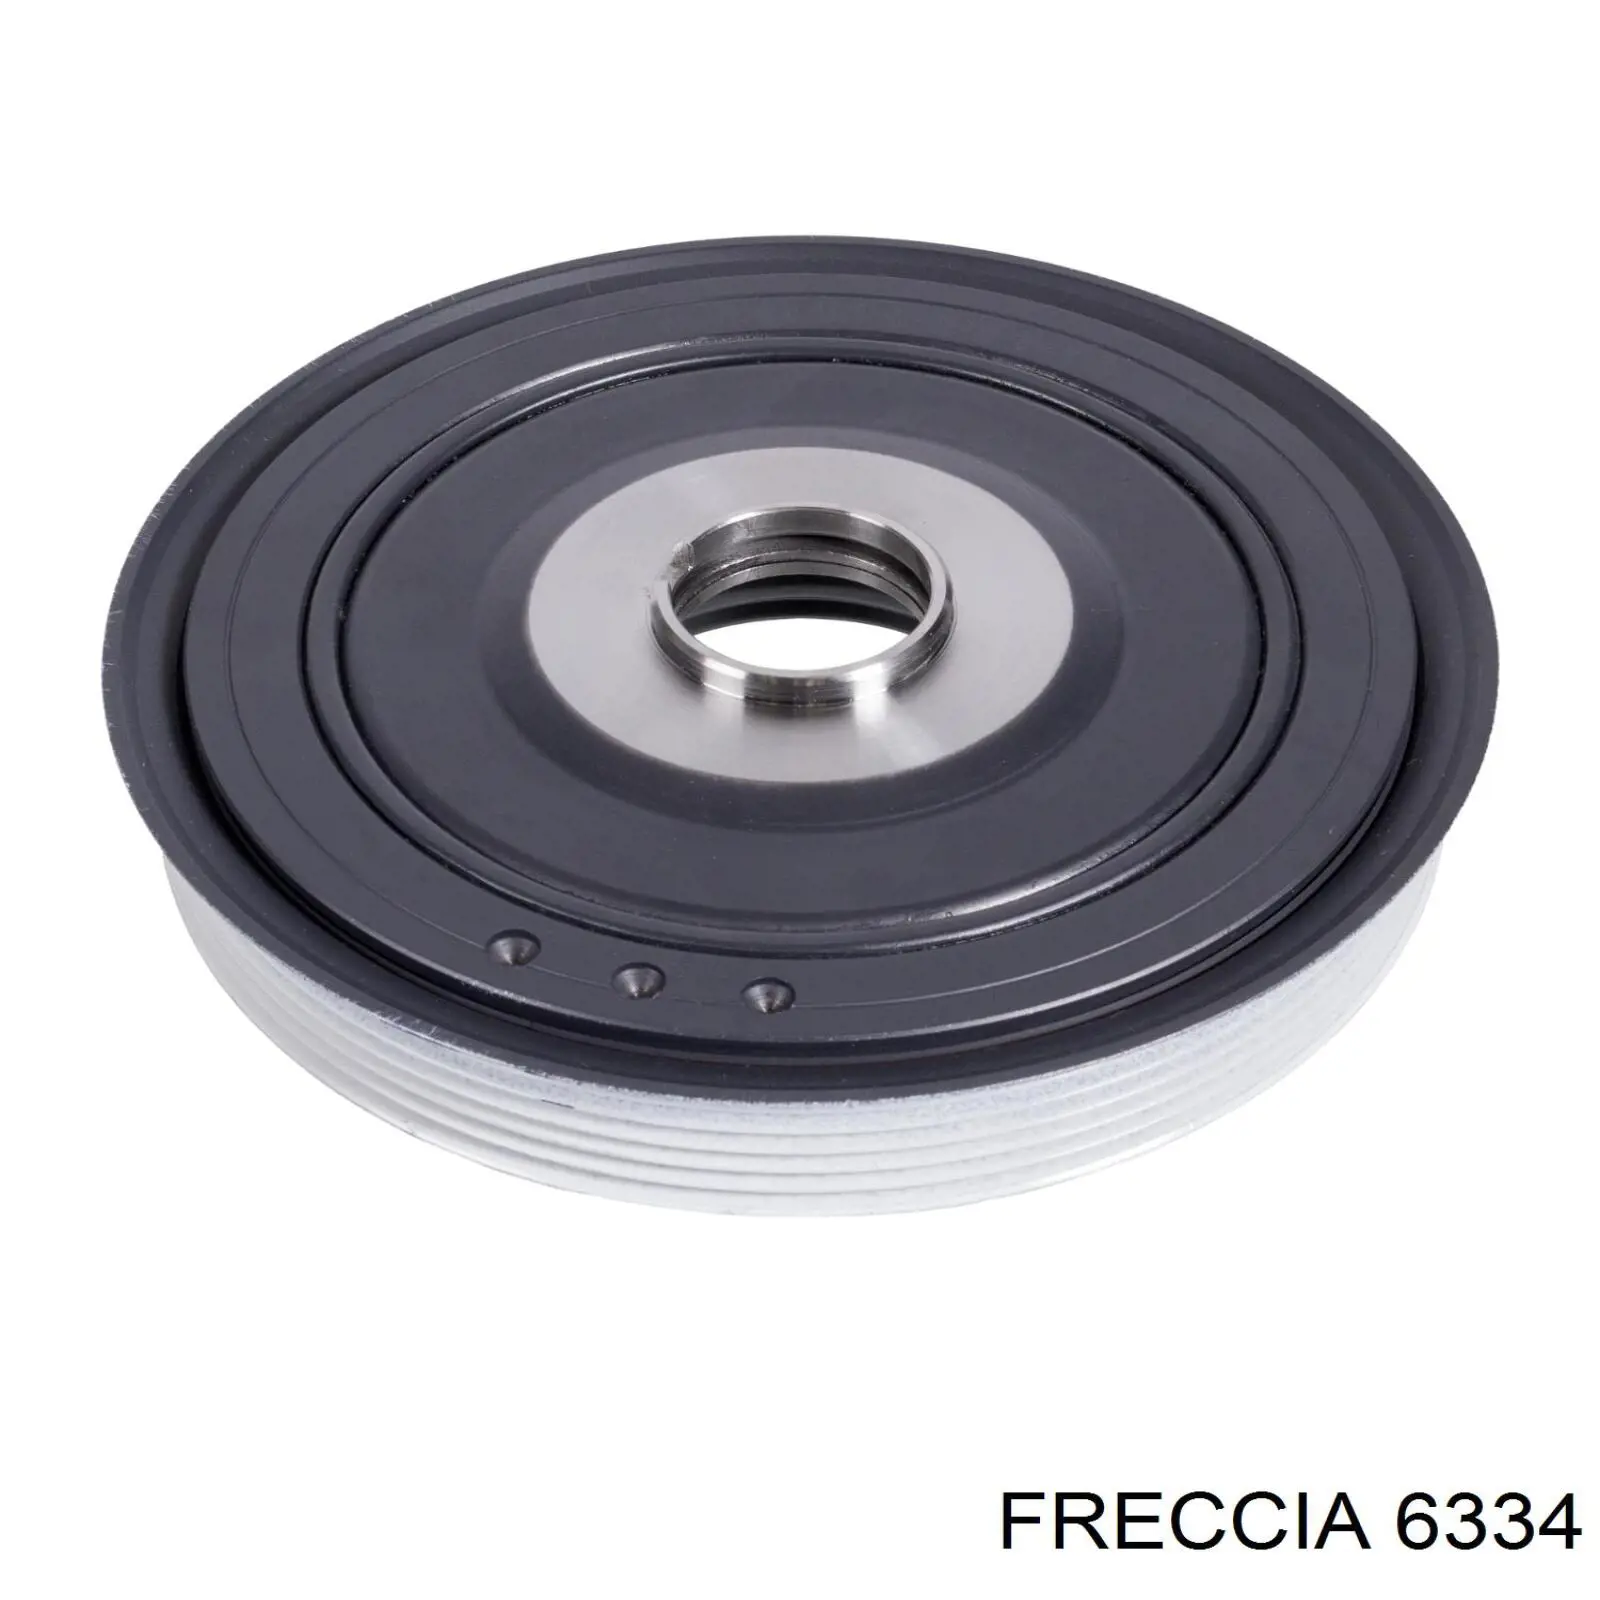 6334 Freccia выпускной клапан